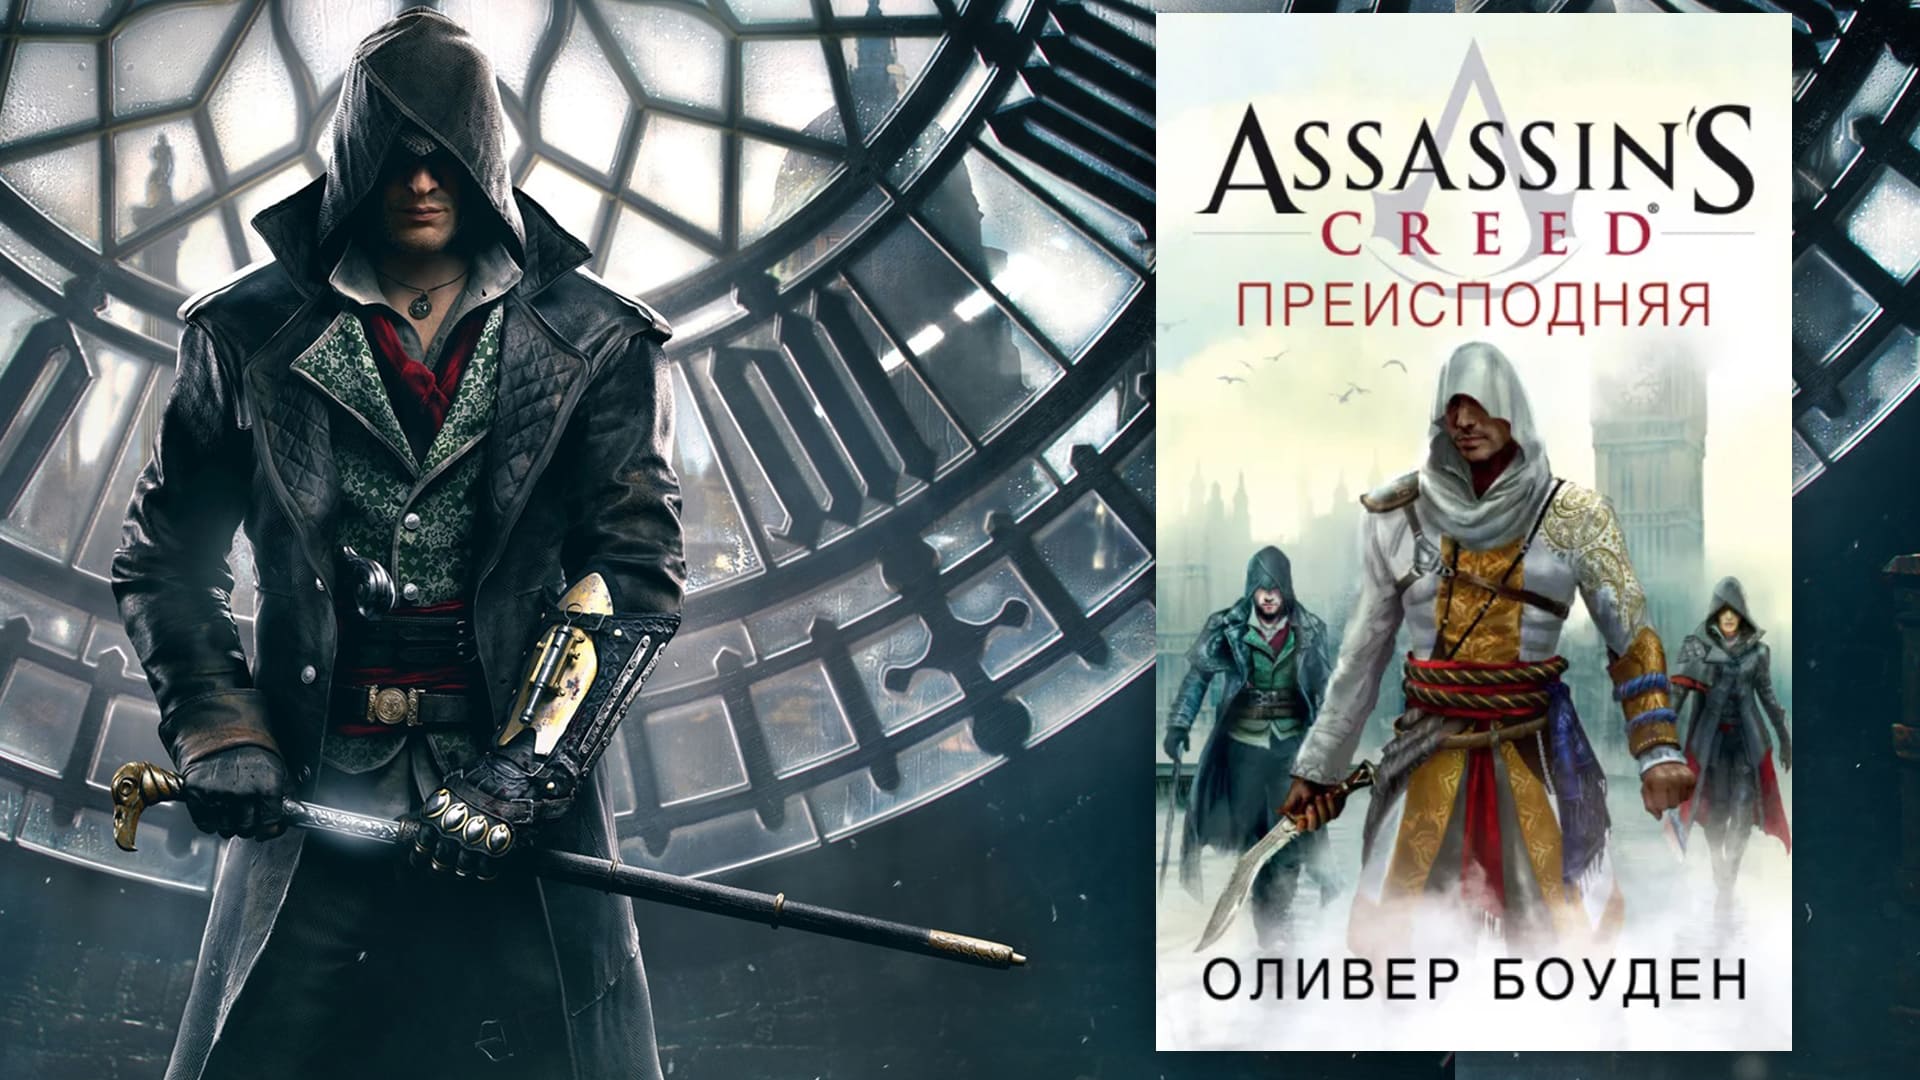 Обложка книги Assassin’s Creed «Преисподняя»